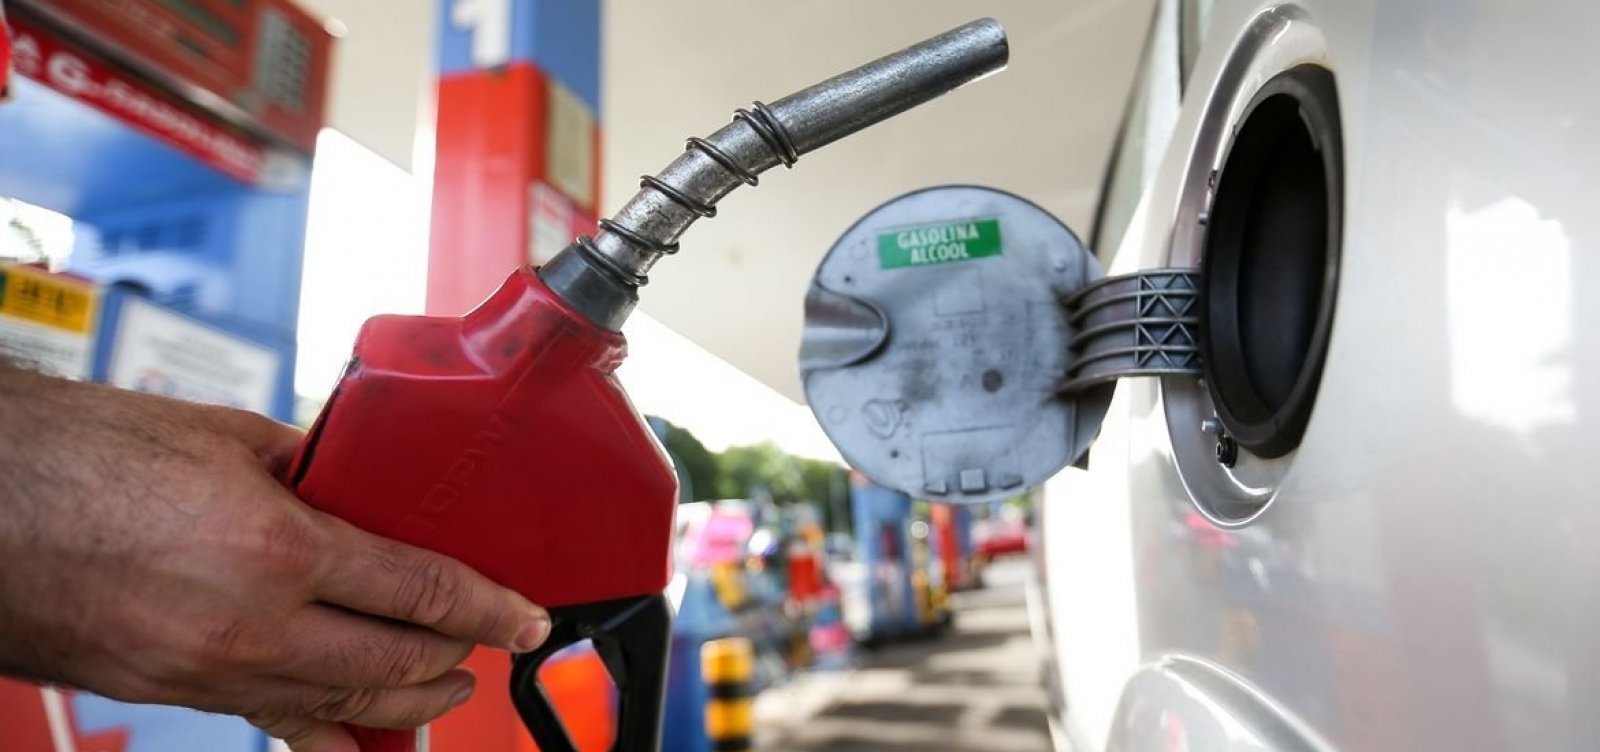 Preços médios da gasolina caem após redução do ICMS e valores recordes em junho, diz ANP